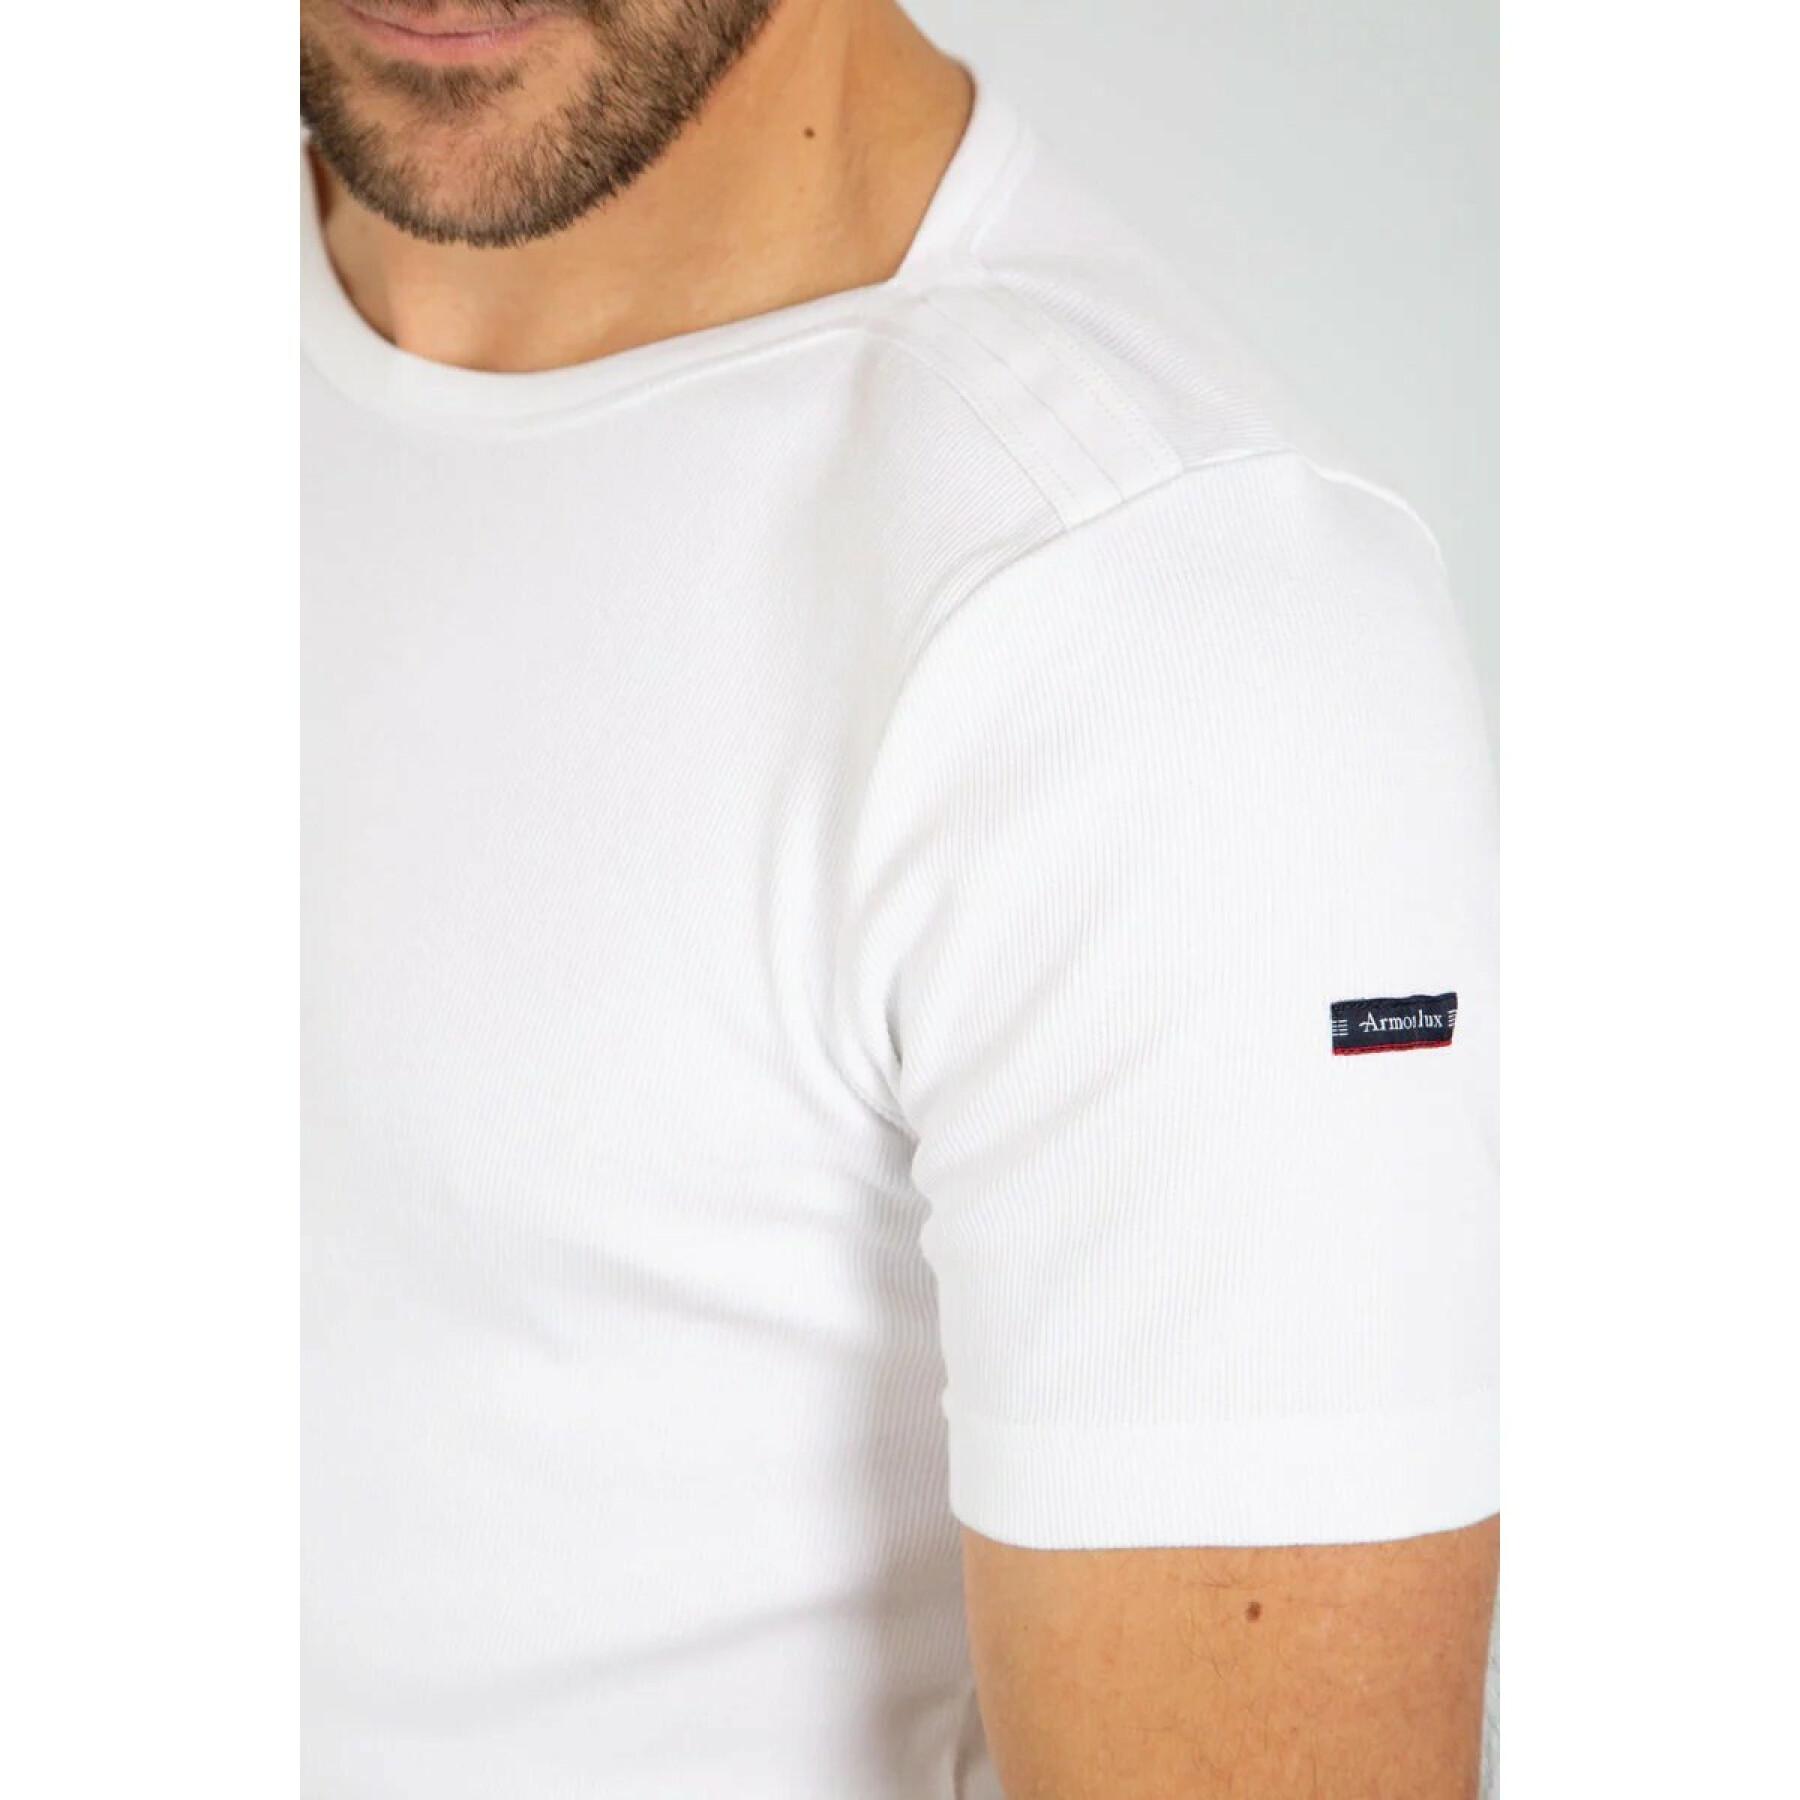 Camiseta marinière Armor-Lux carantec